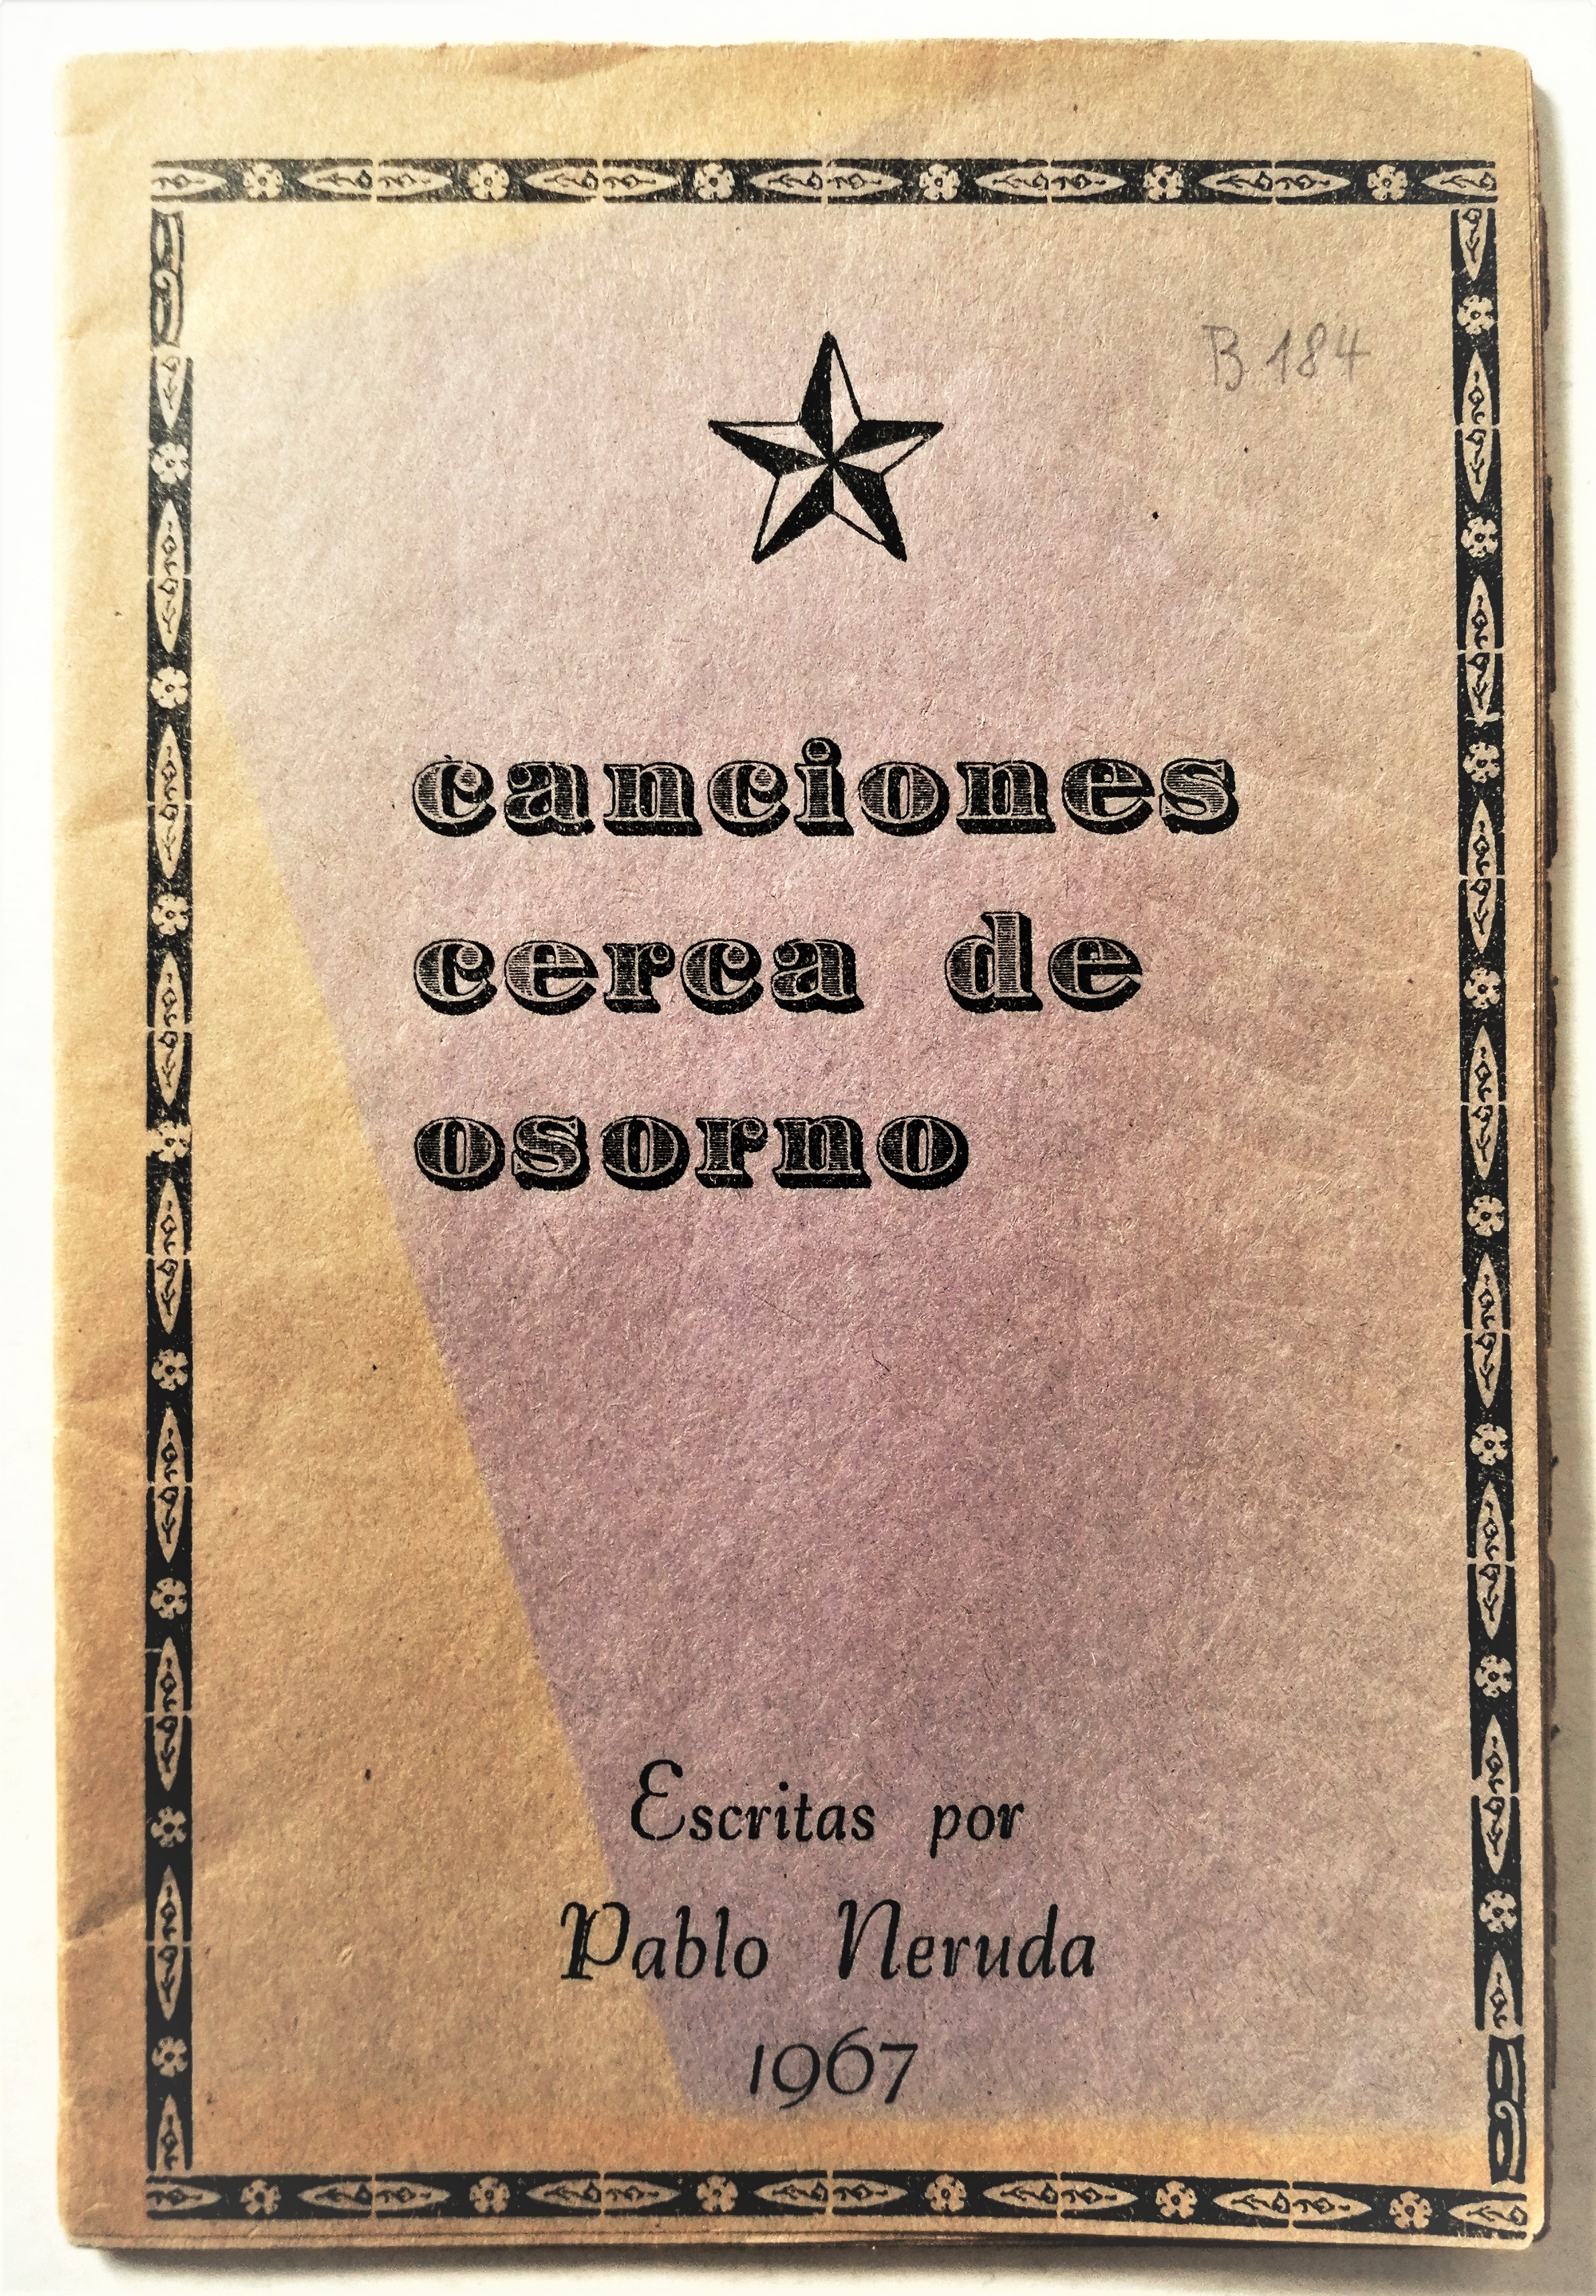 Pablo Neruda - Canciones cerca de Osorno